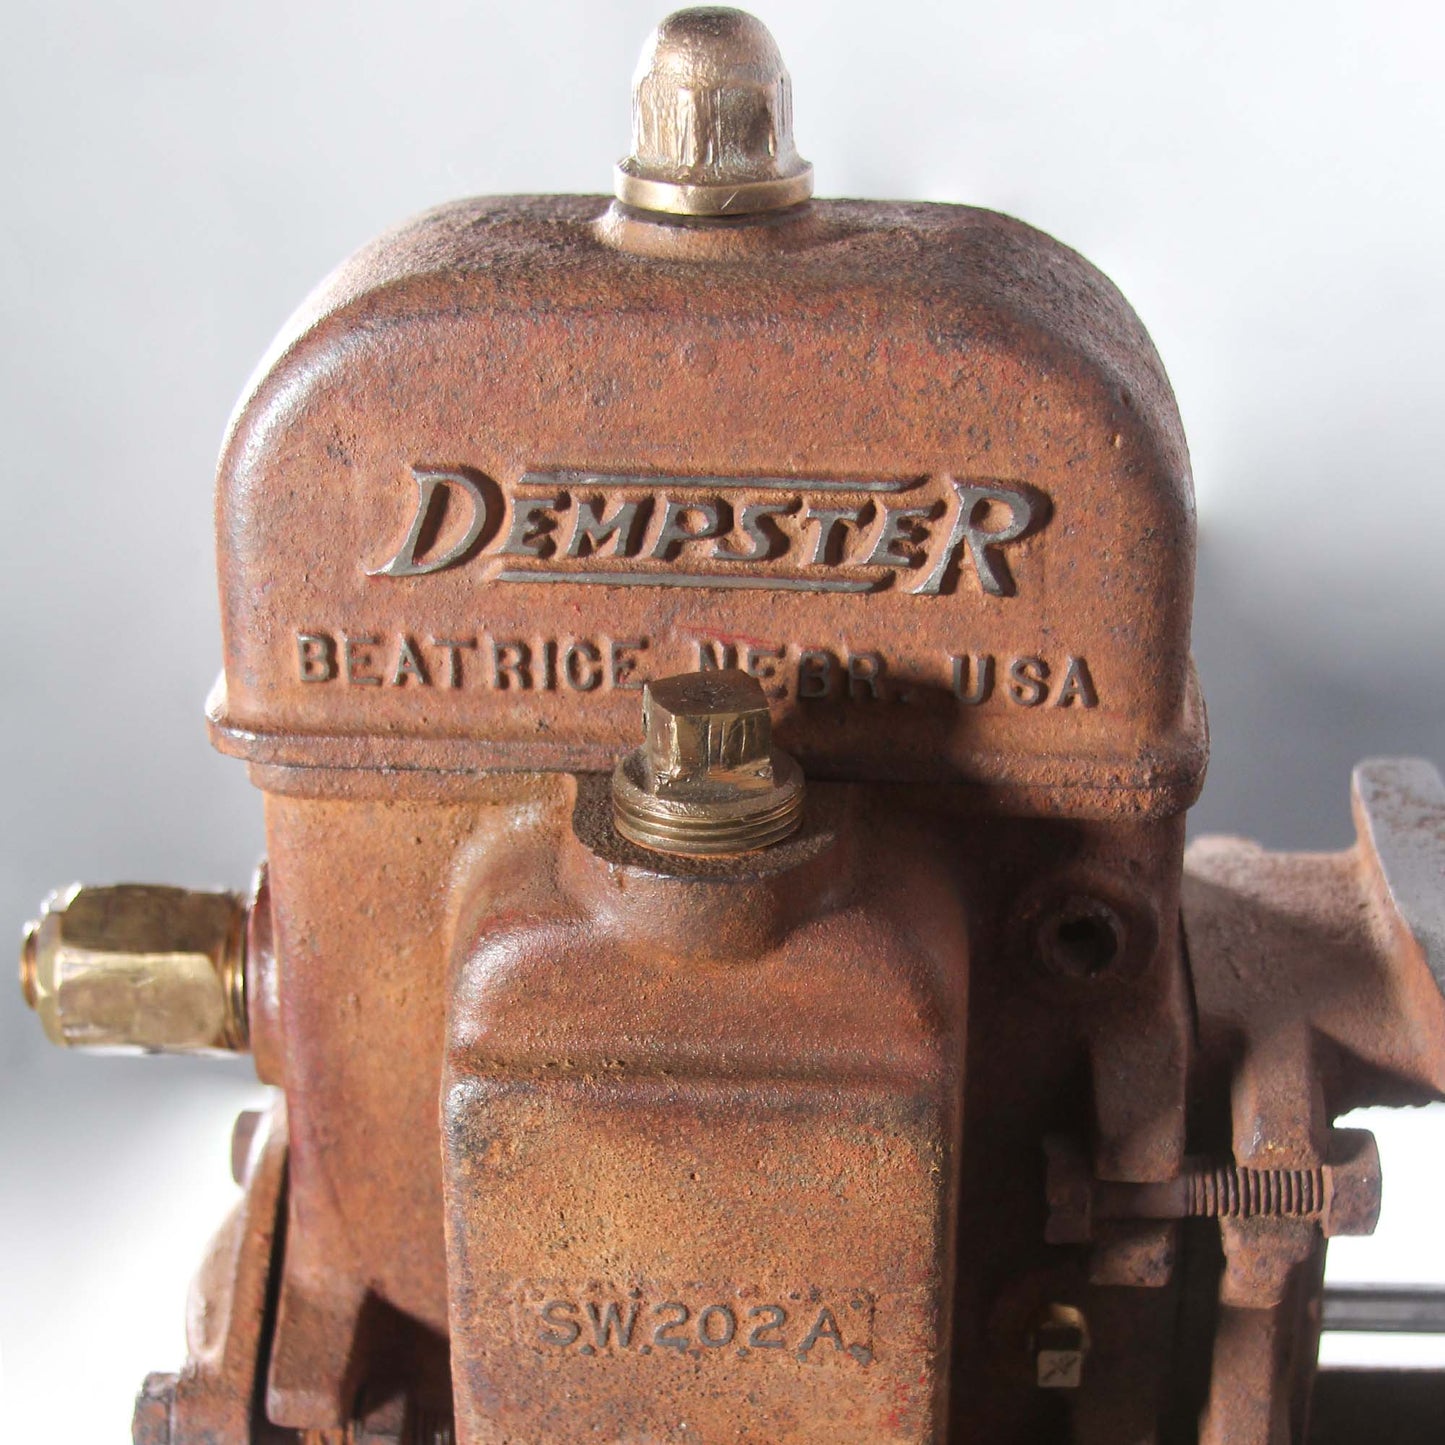 Dempster Vintage Water Pump Display